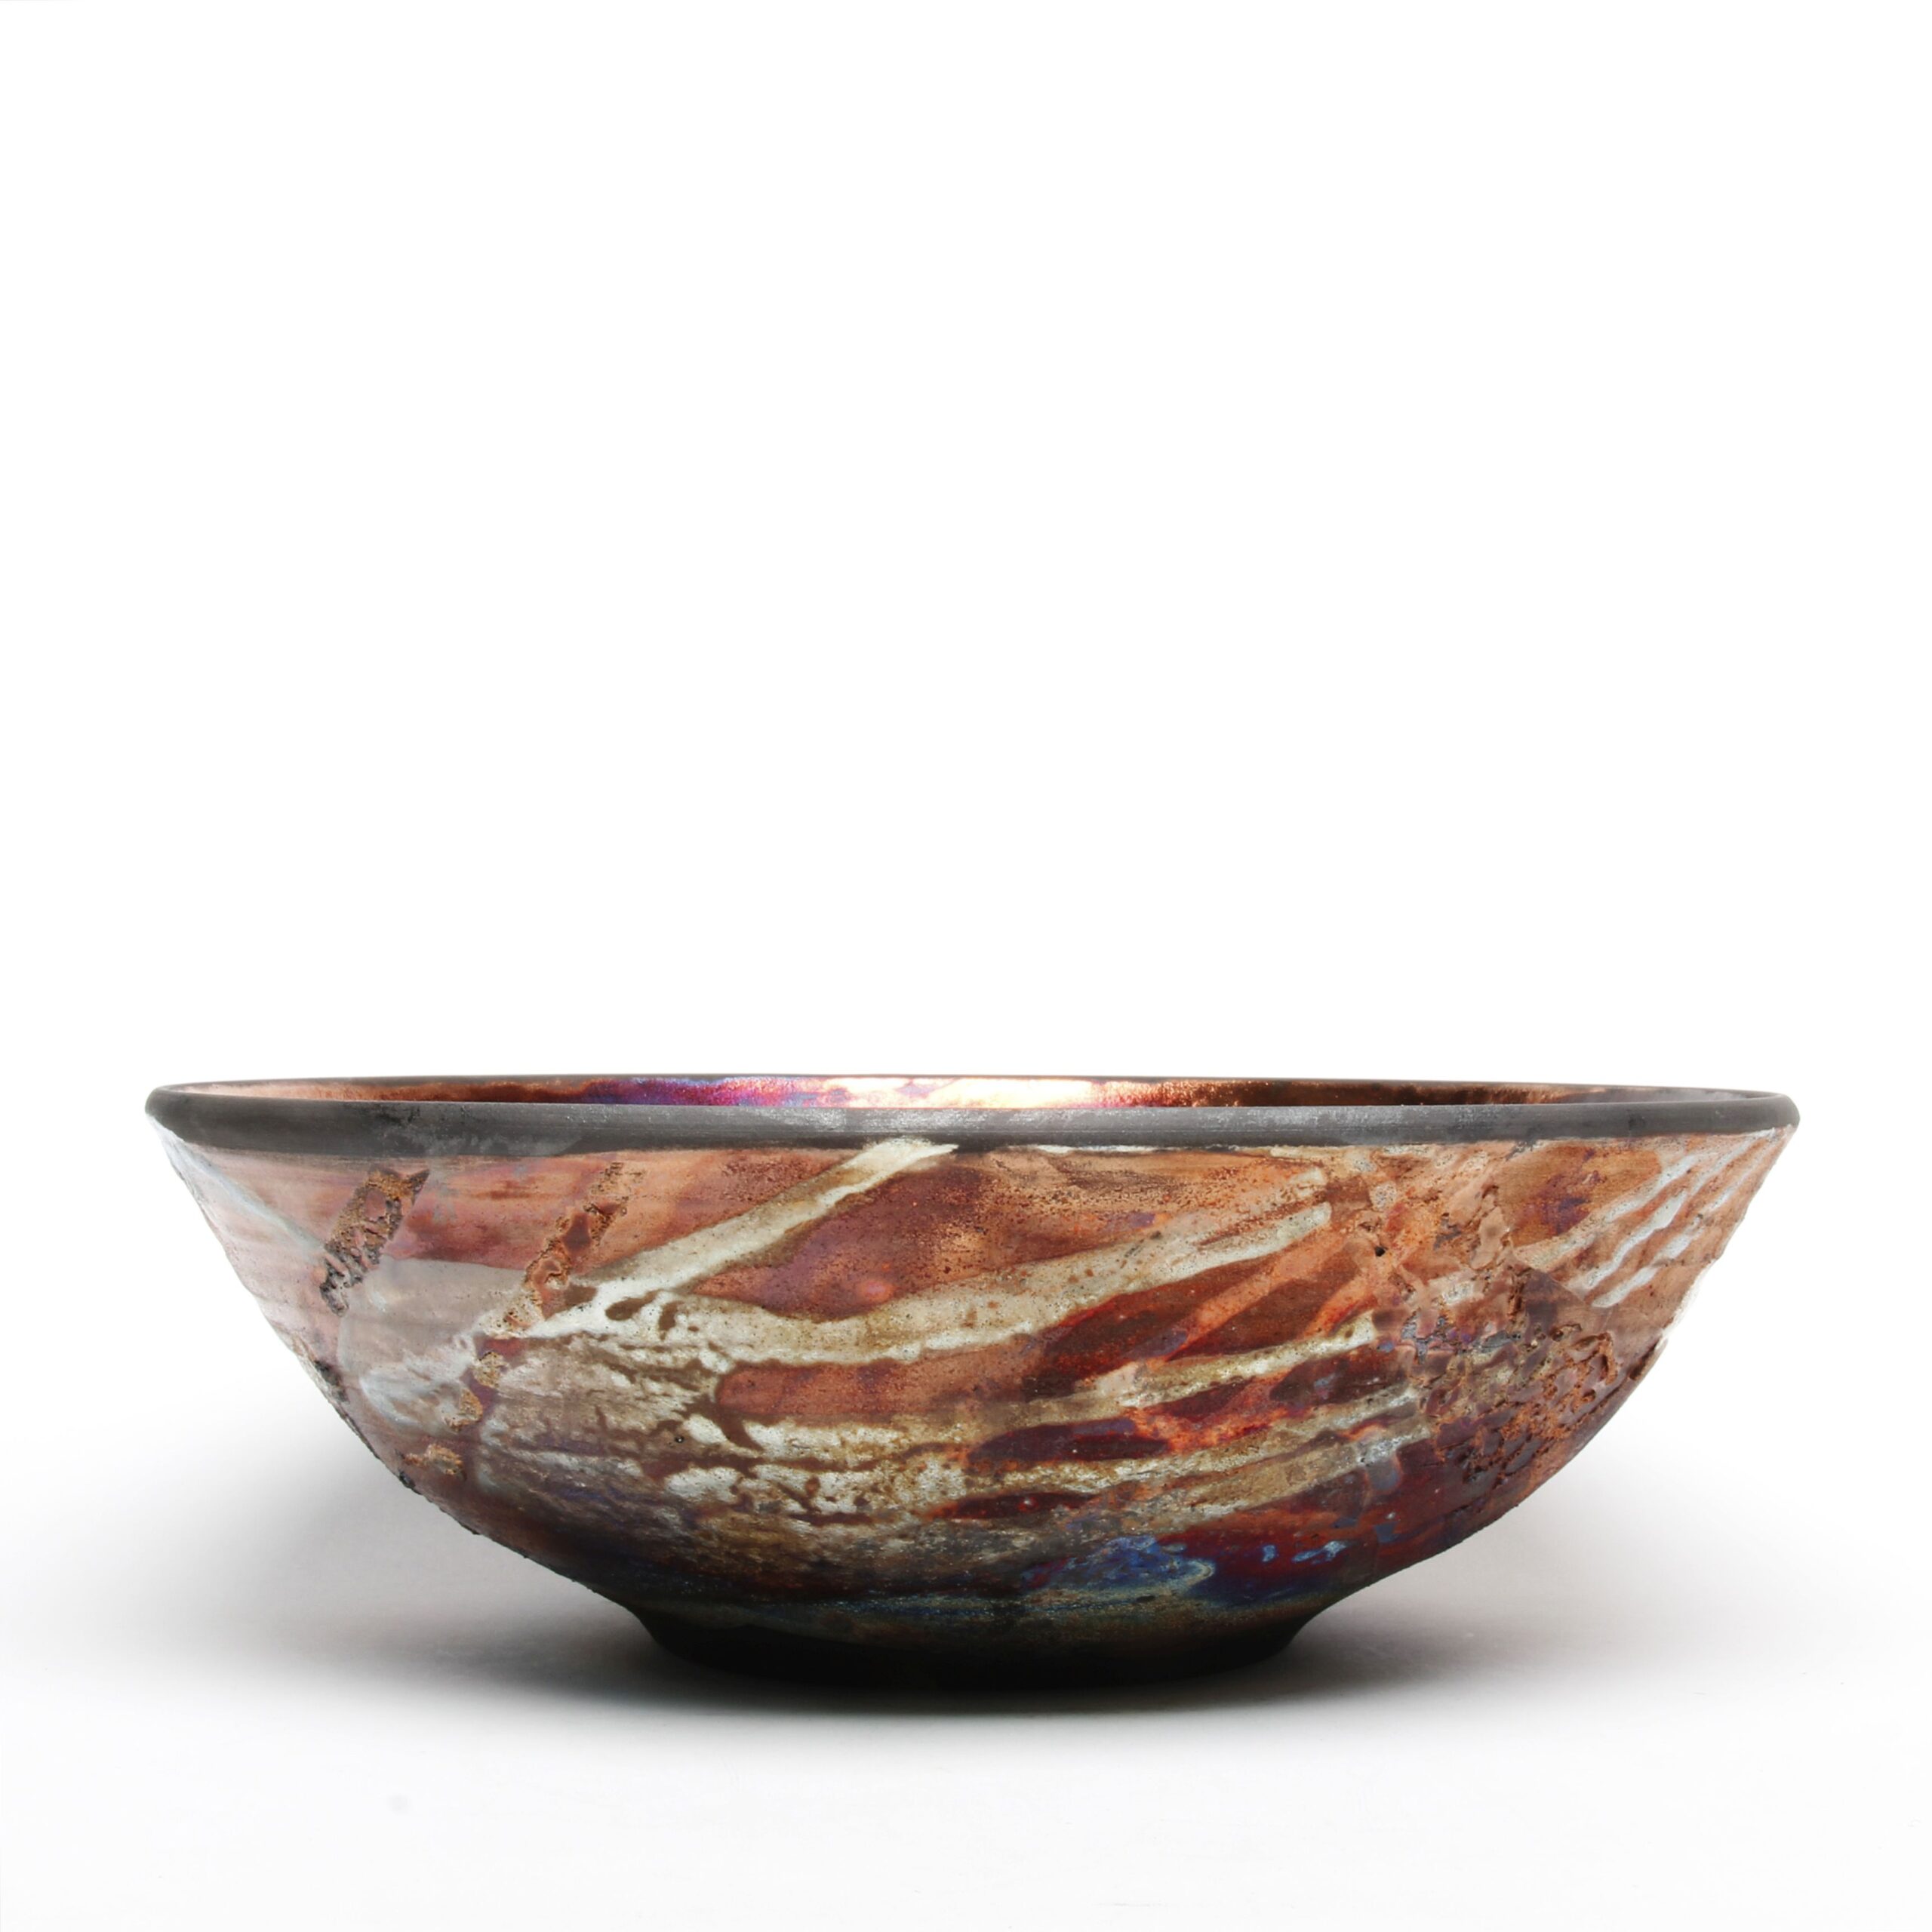 Shu-Chen Cheng: Large Raku bowl Product Image 1 of 1